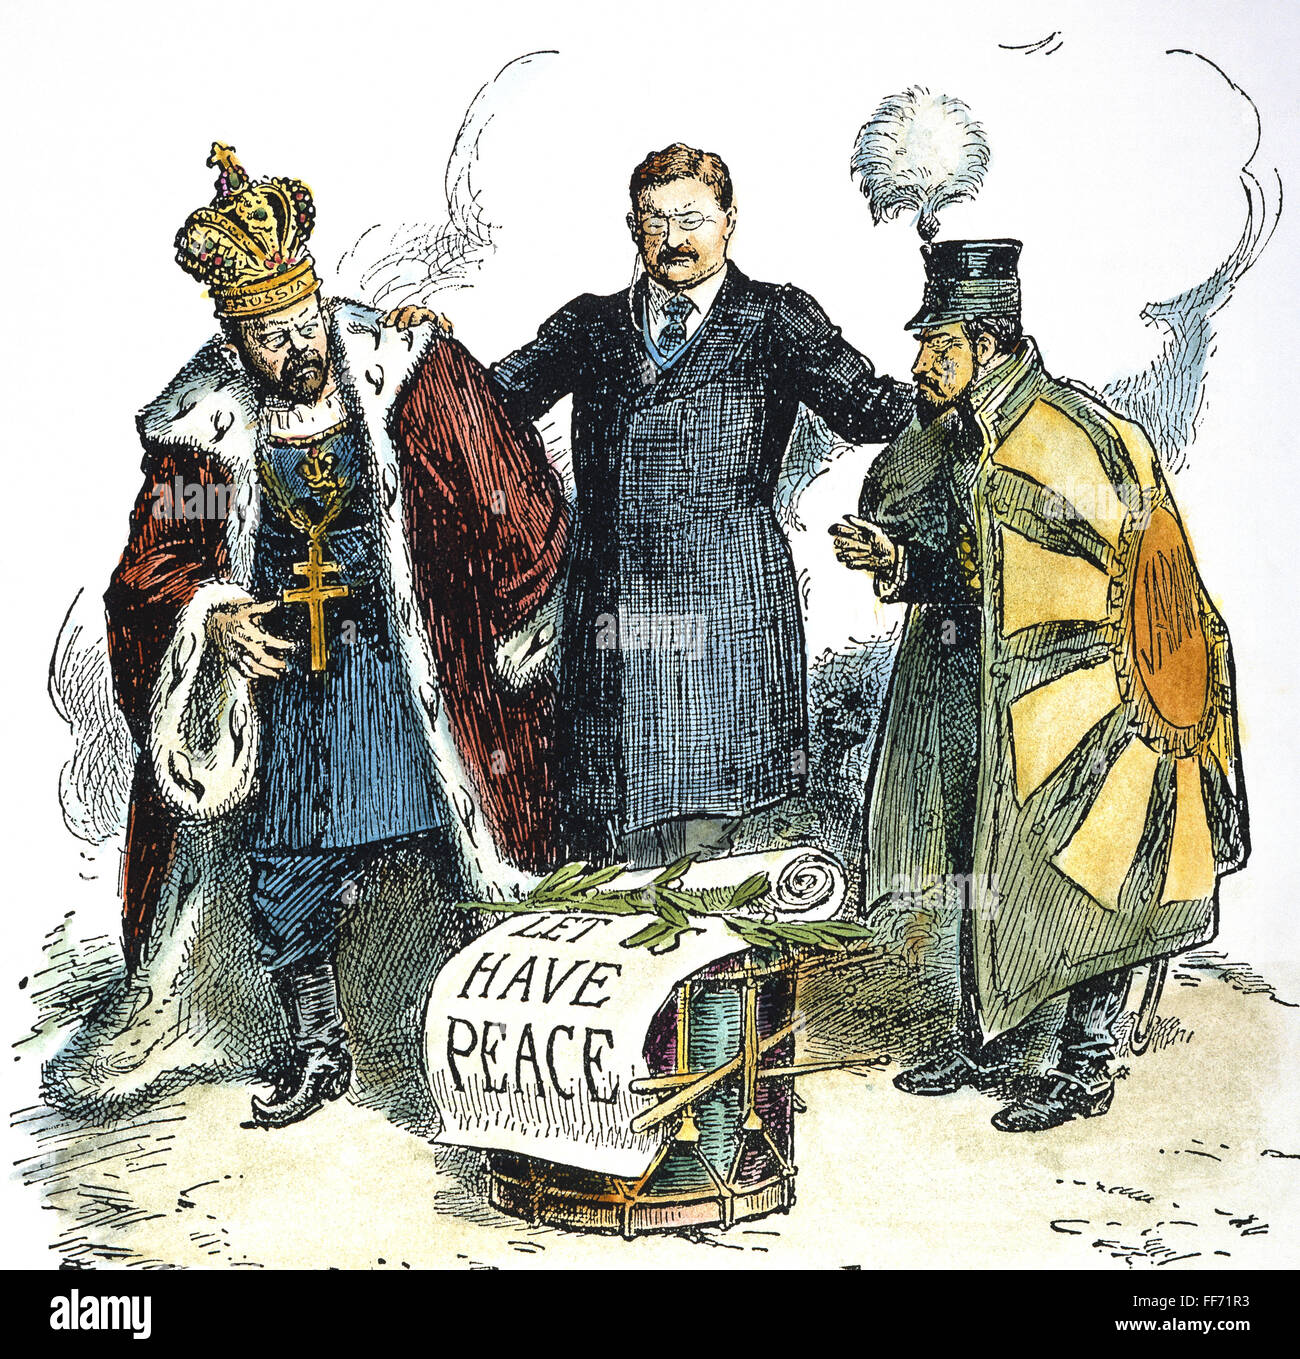 RUSSISCH-JAPANISCHEN KRIEGES 1905. /n'Let us Peace. " Eine amerikanische Cartoon von 1905 hagelt Präsident Theodore Roosevelt Friedensbemühungen, die beendet den russisch-japanischen Krieg. Stockfoto